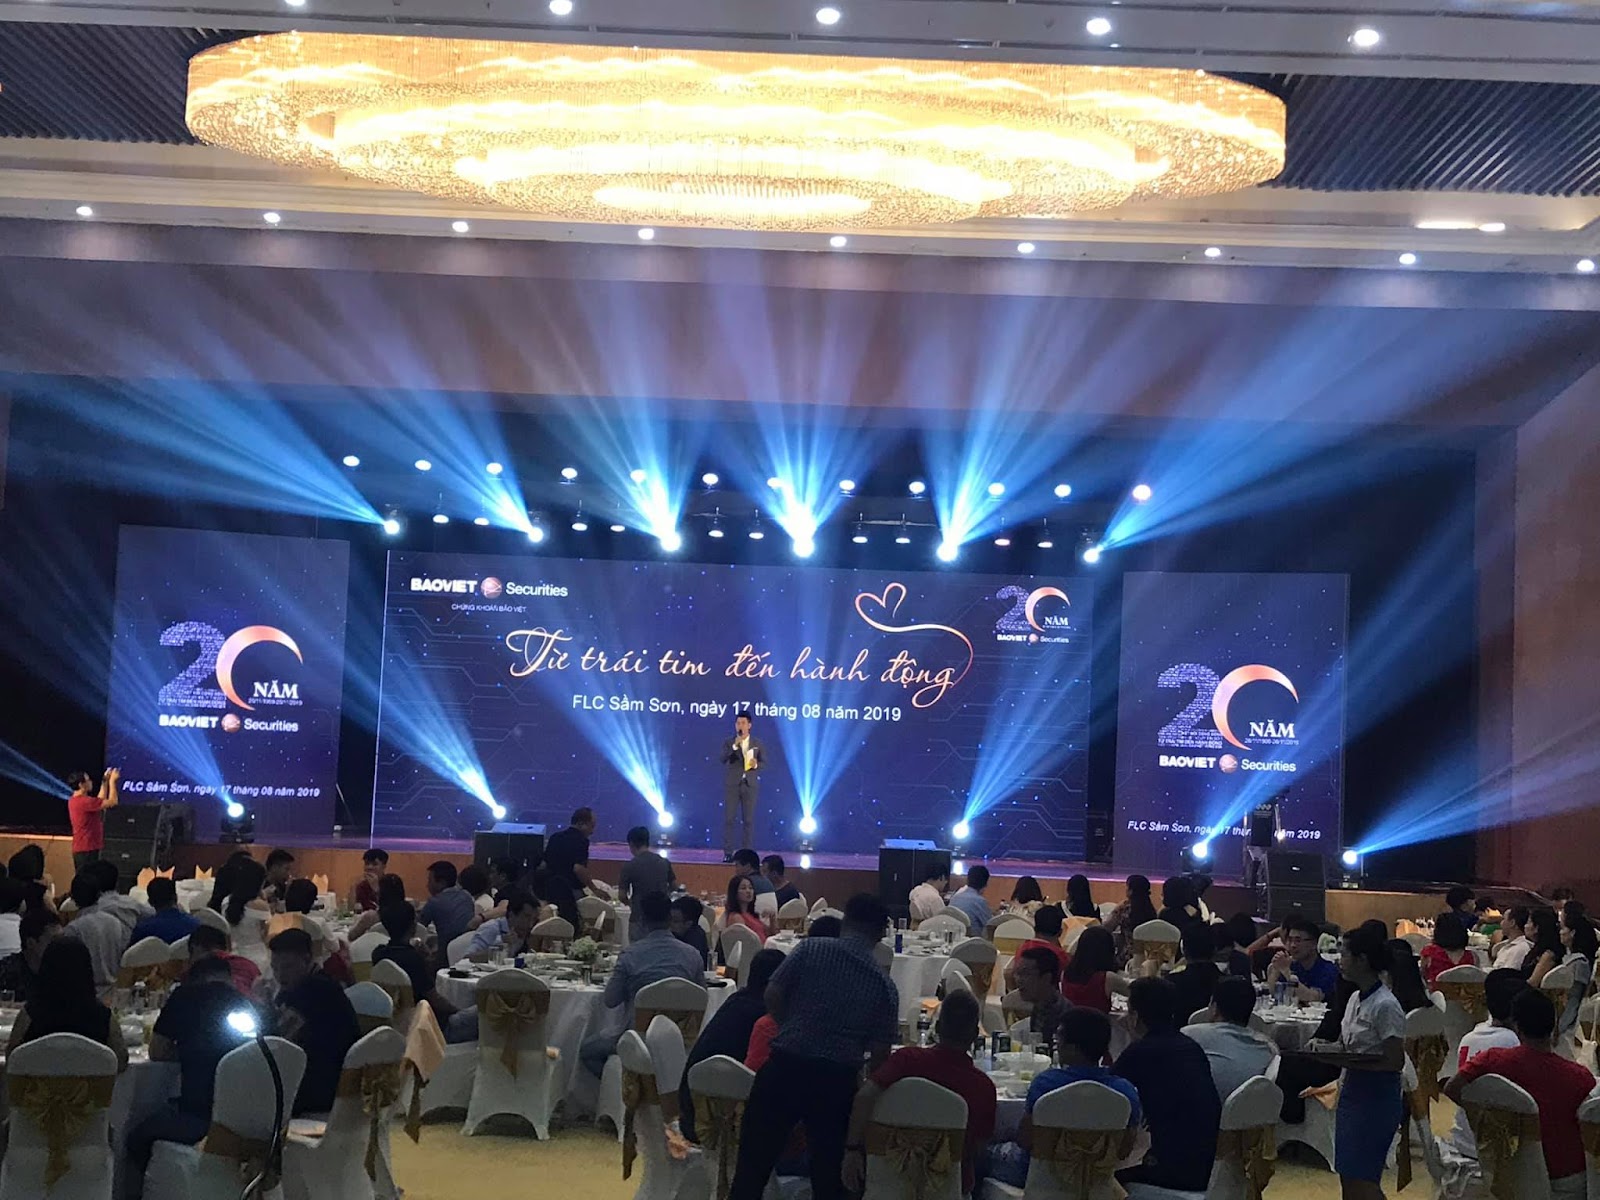 Top 10 Công ty cho thuê thiết bị tổ chức sự kiện tốt nhất tại Hà Nội